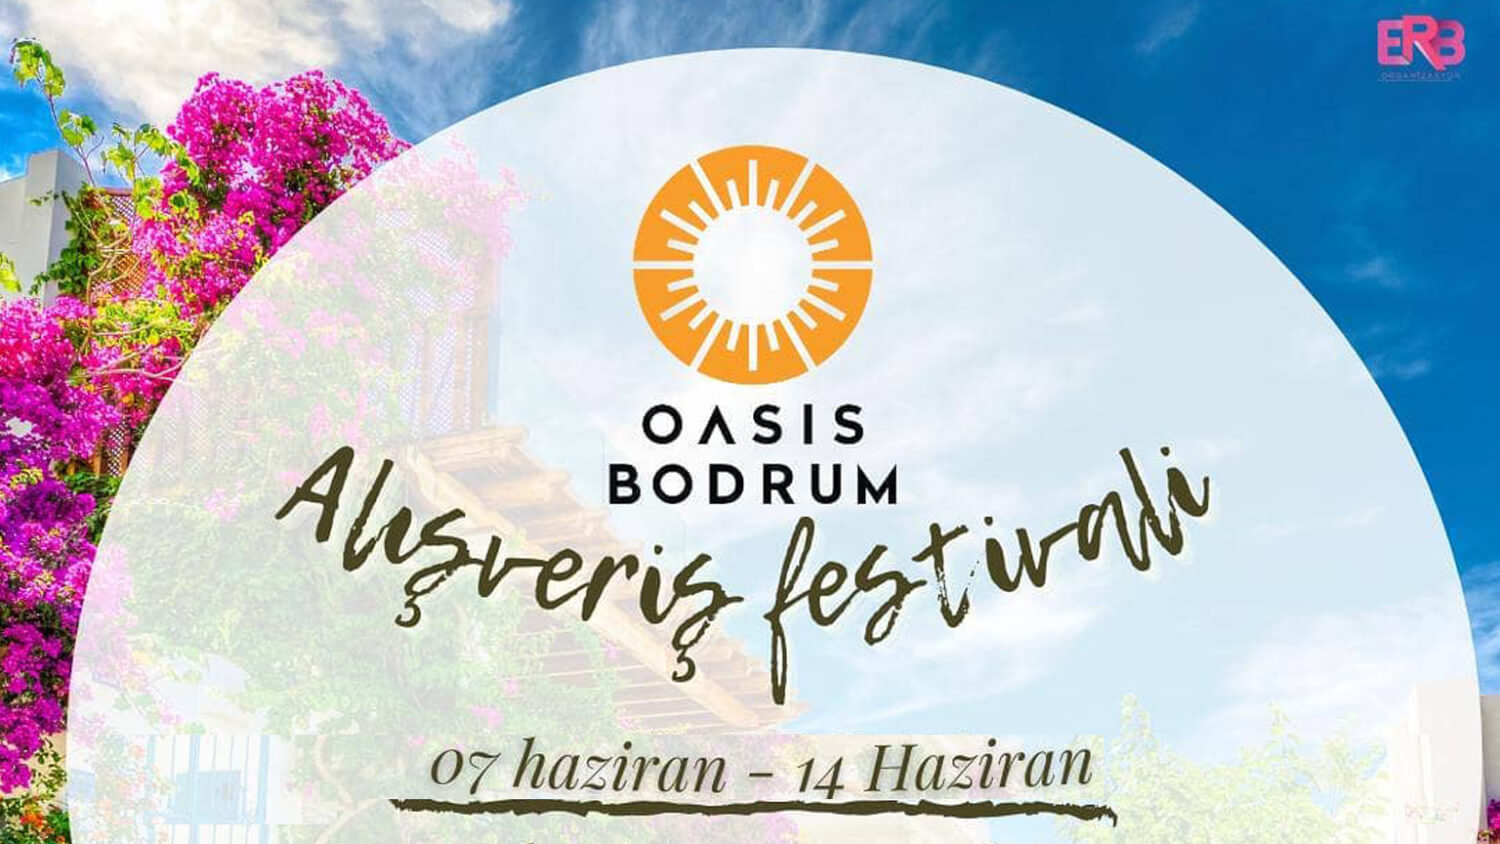 Bodrum Haziran 2021 Etkinlikleri - Oasis Bodrum Alışveriş Şenliği